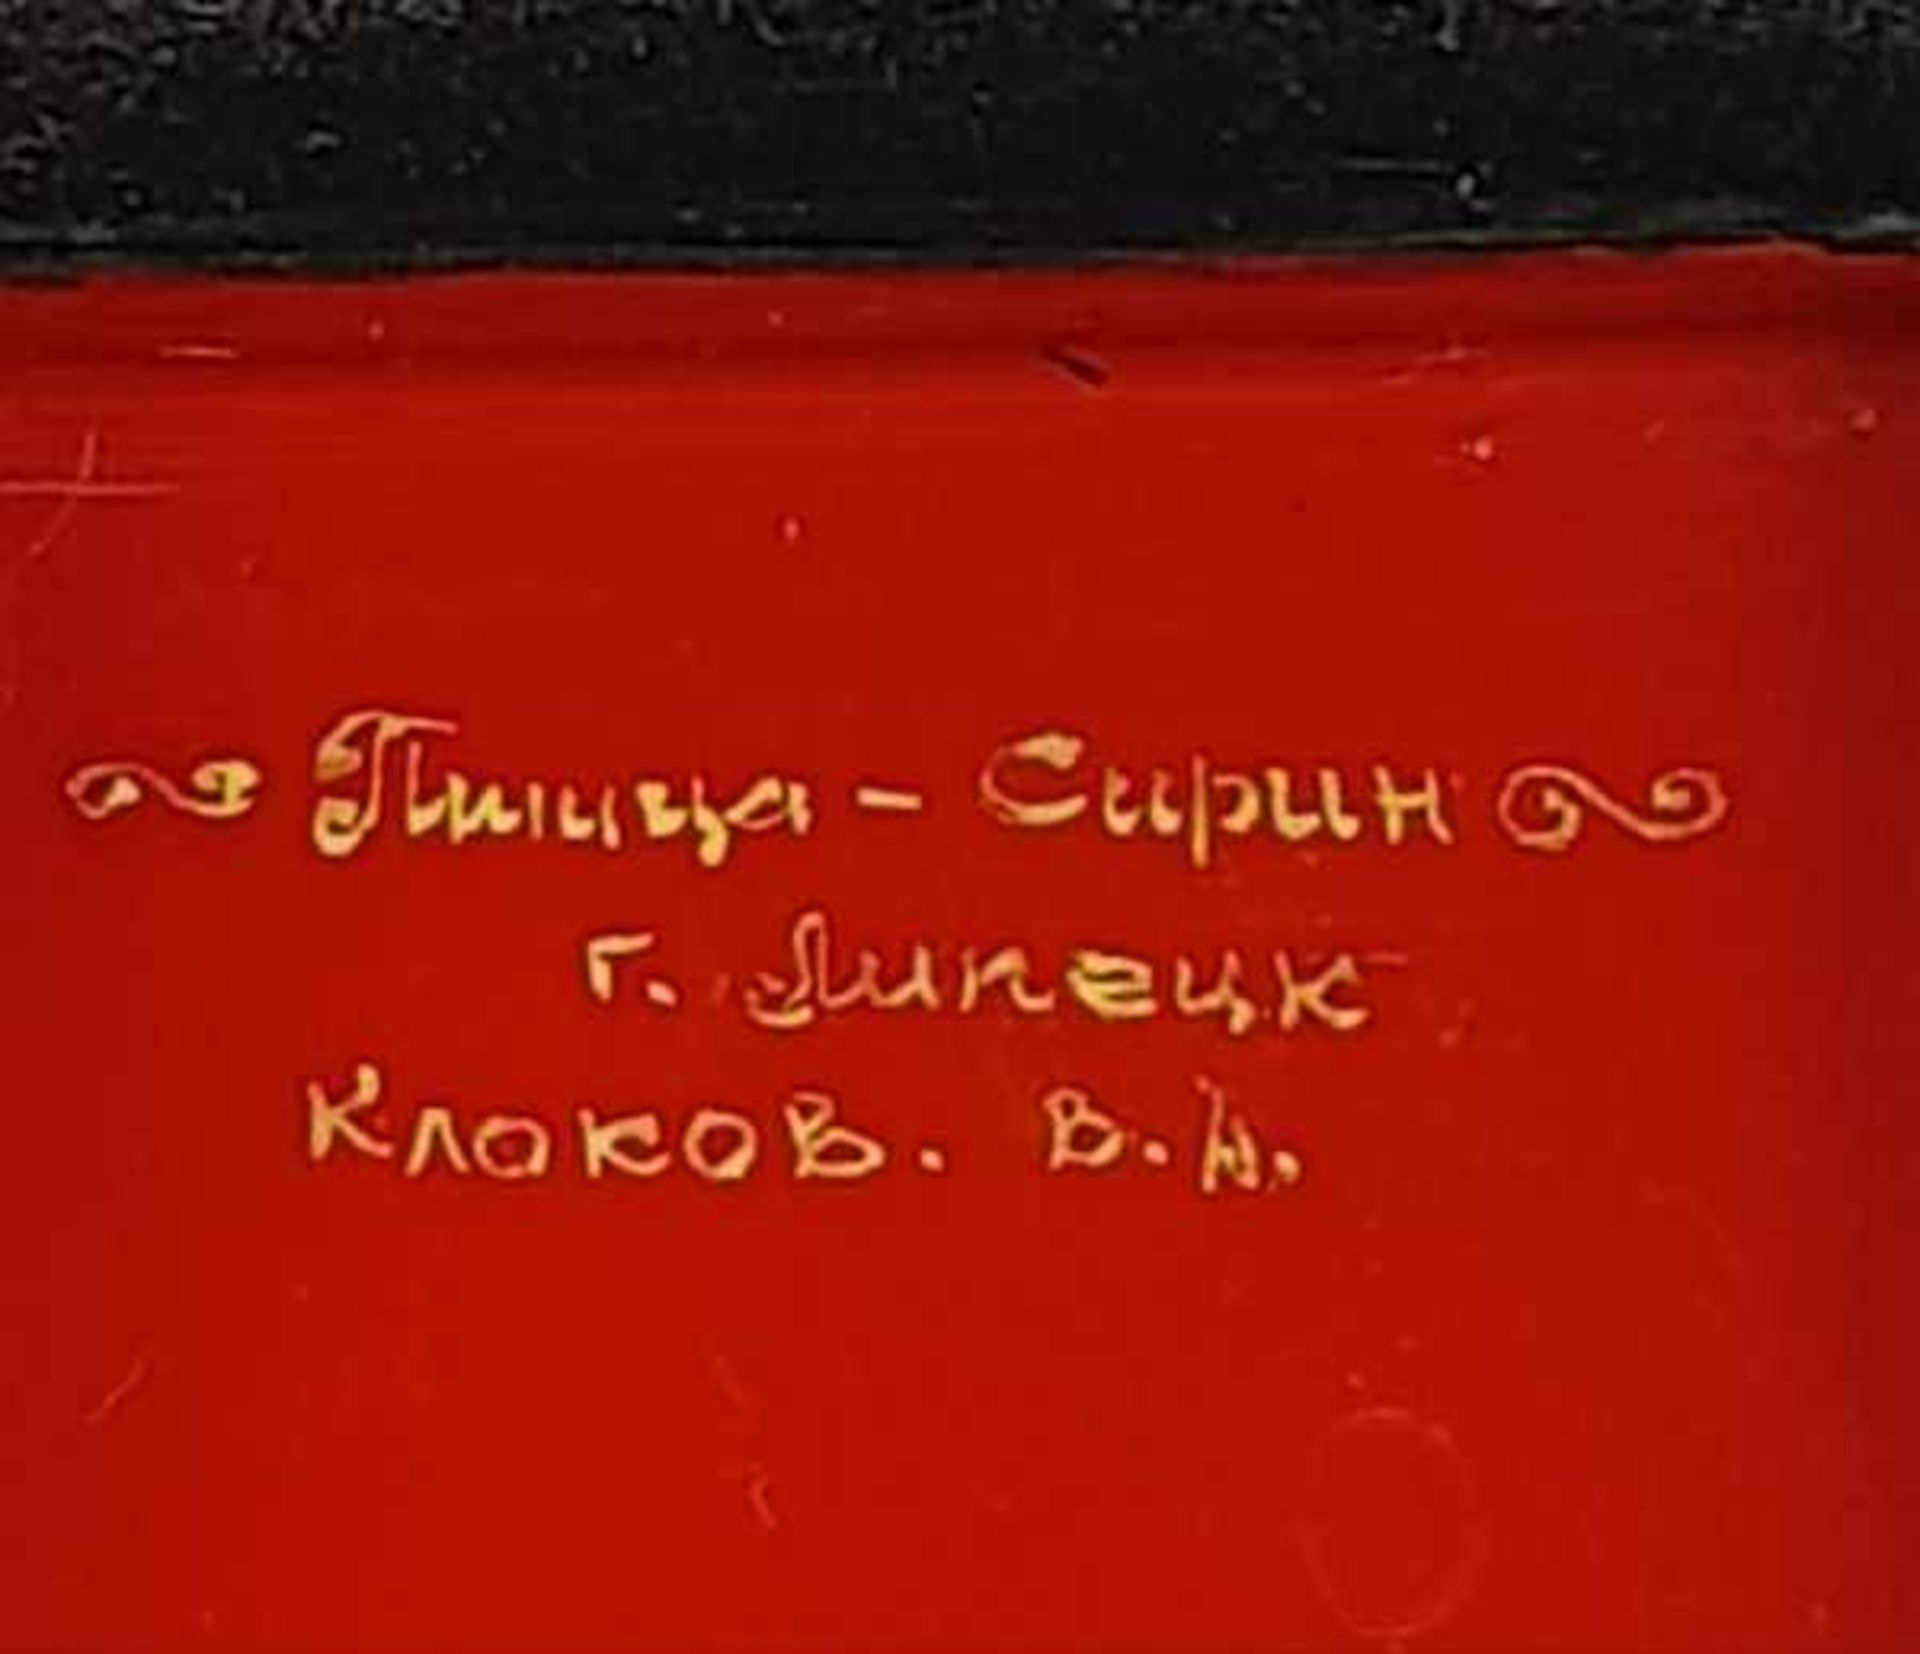 (Curiosa) Russische lakdoosjesRussische lakdoosjes, eind 20e eeuw Conditie: In goede staat. - Bild 9 aus 10